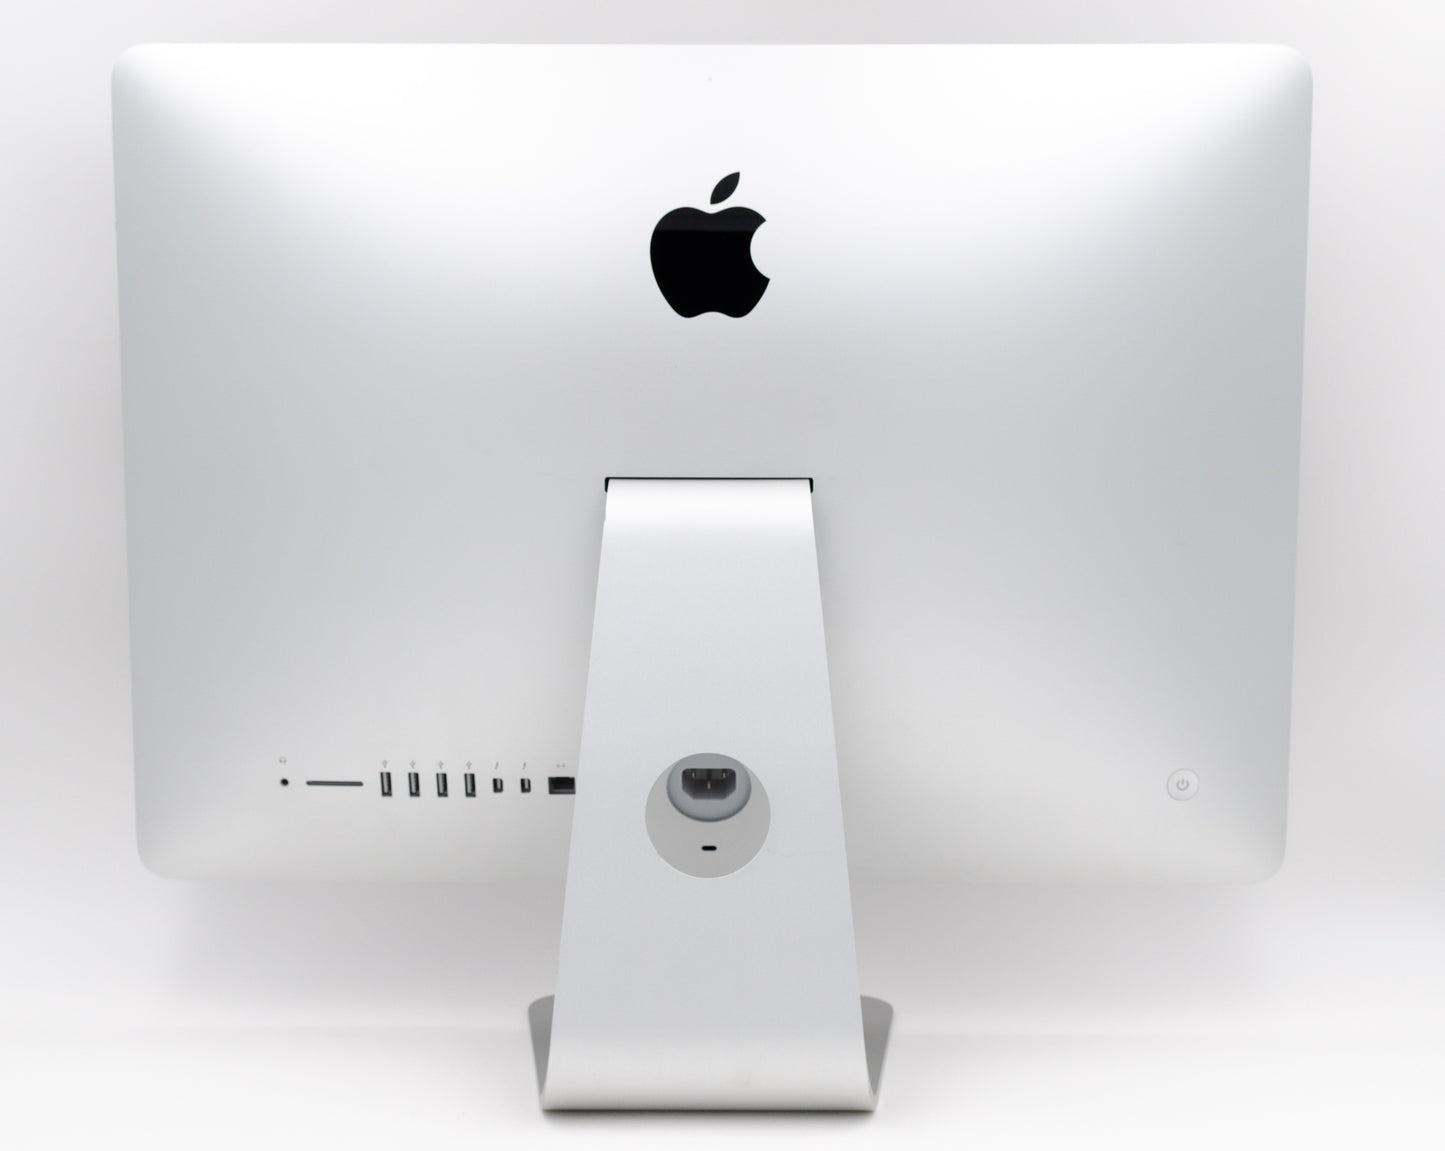 apple-mid-2019-21.5-inch-imac-ultra-thin-4k-a2116-aluminum-qci3 - 3.6ghz, 8gb ram, pro 555x - 2gb gpu-3